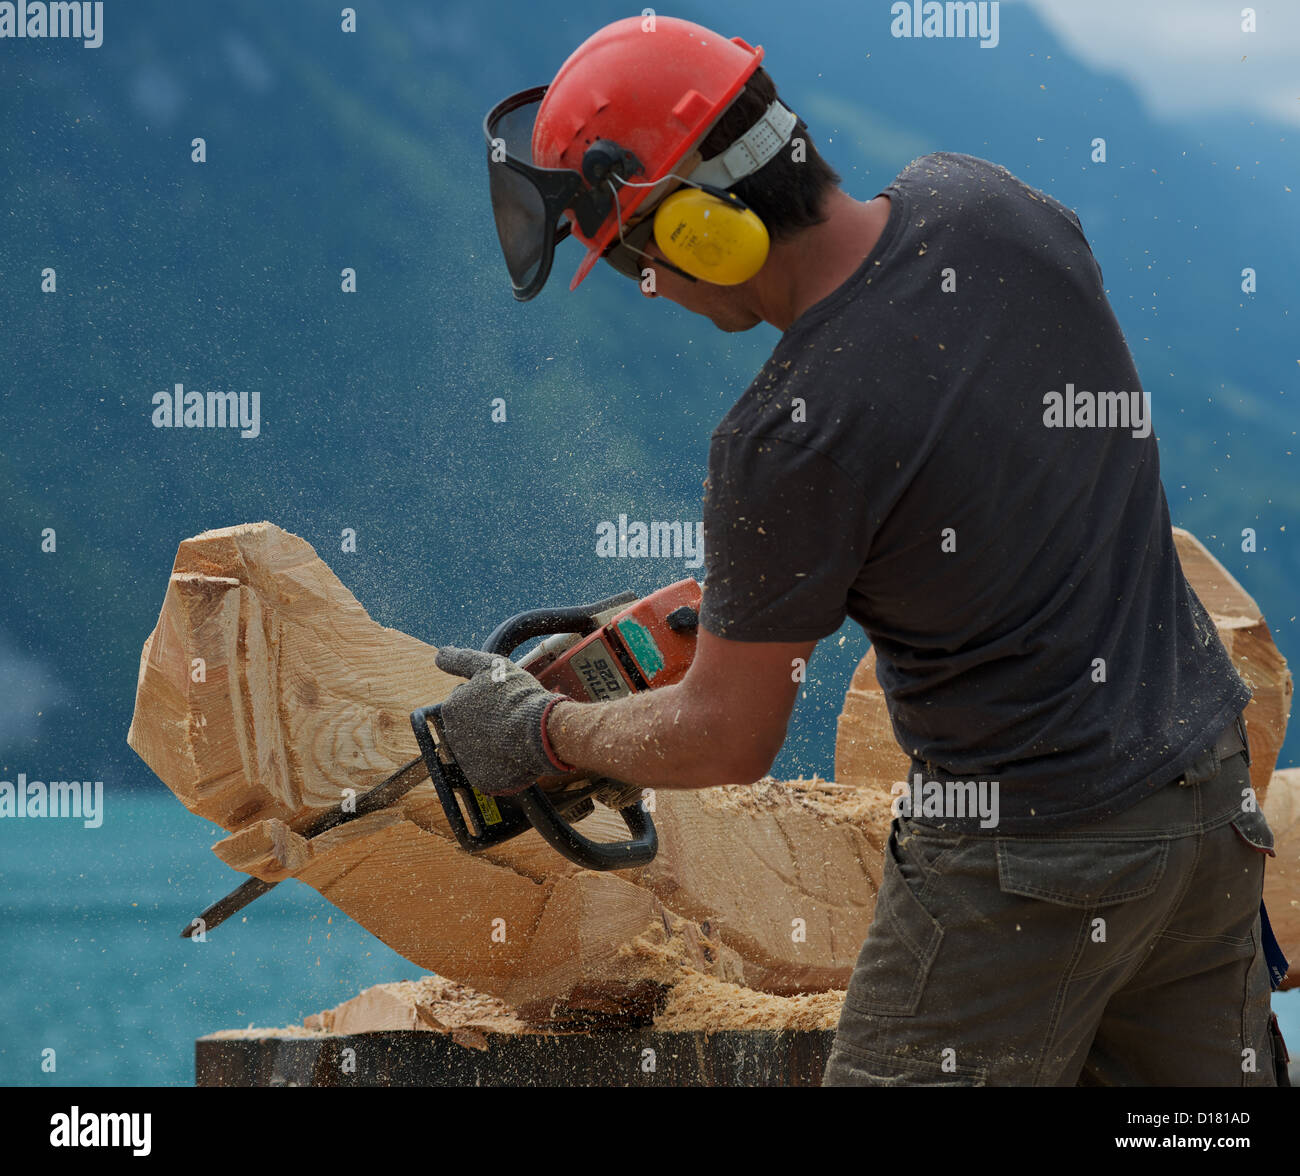 Holz mit Kettensäge Brienz Schweiz Stockfotografie - Alamy